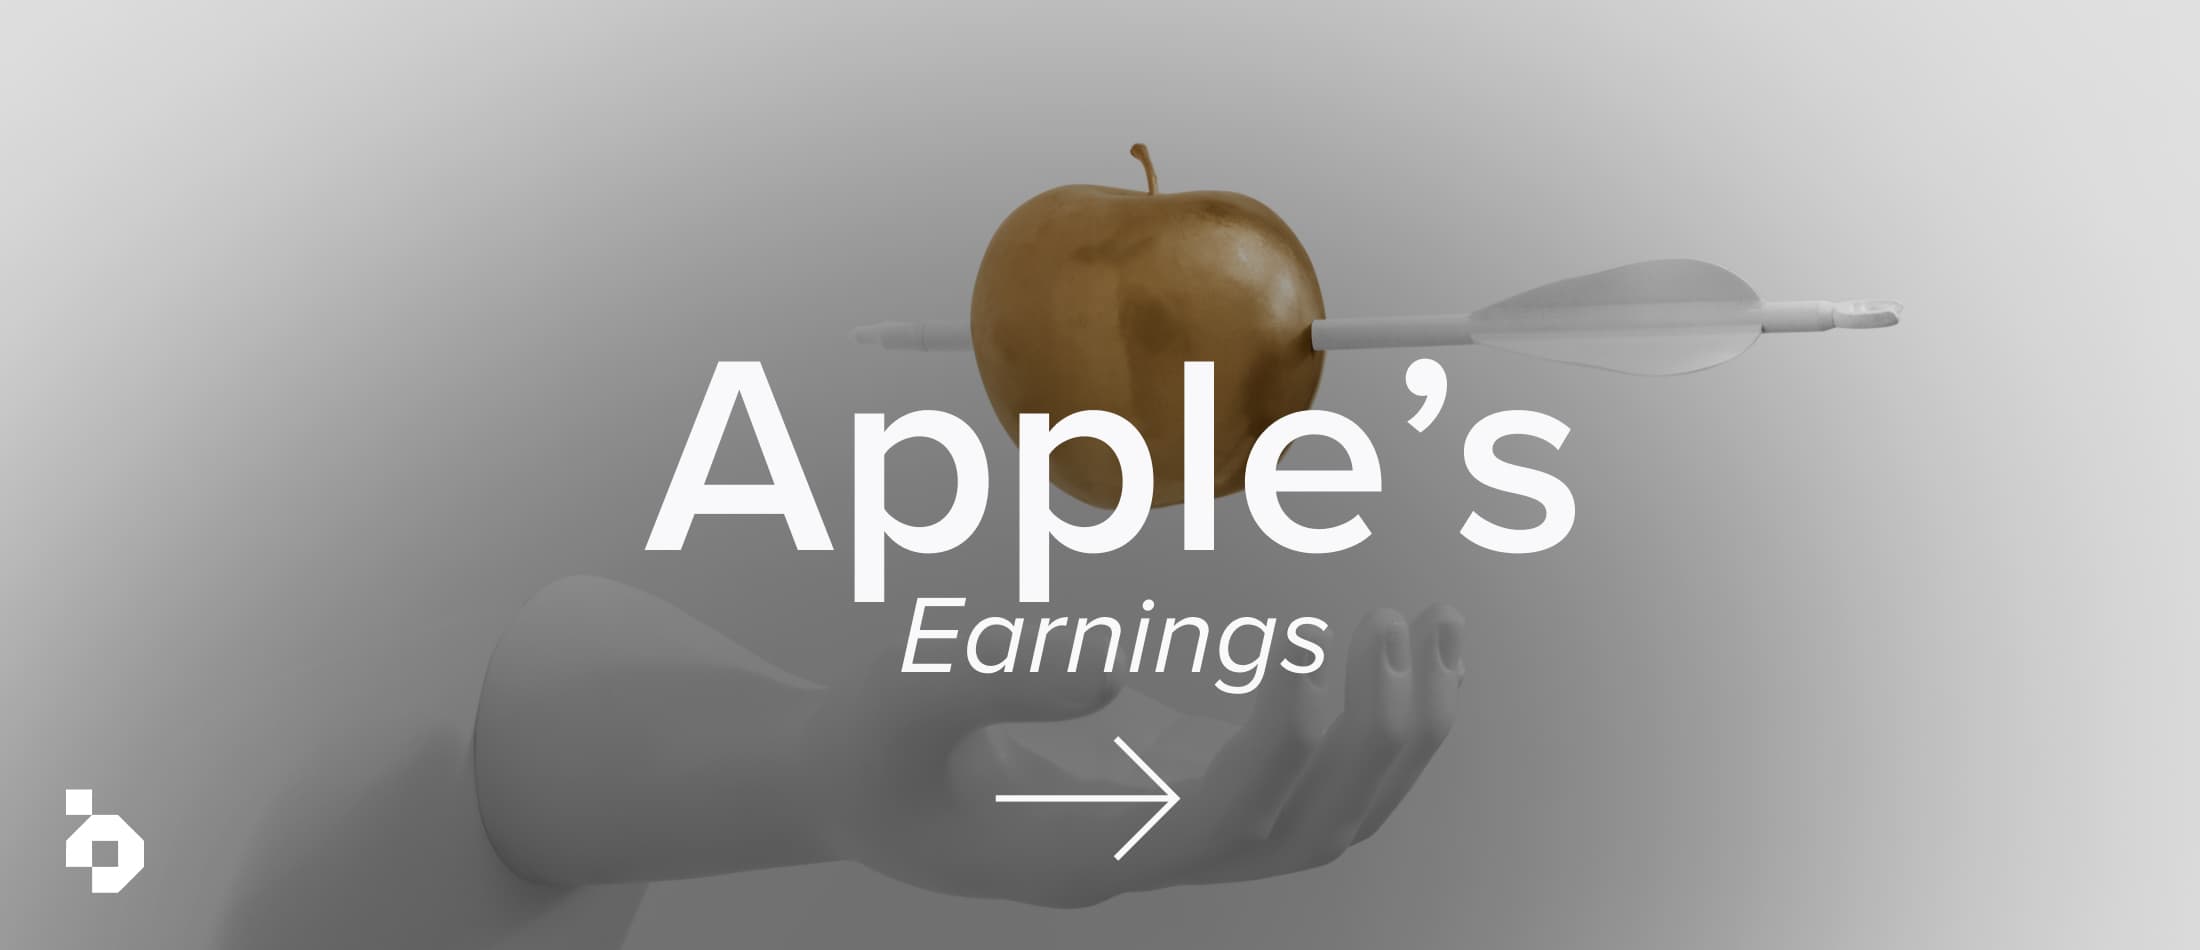 Apple’s earnings